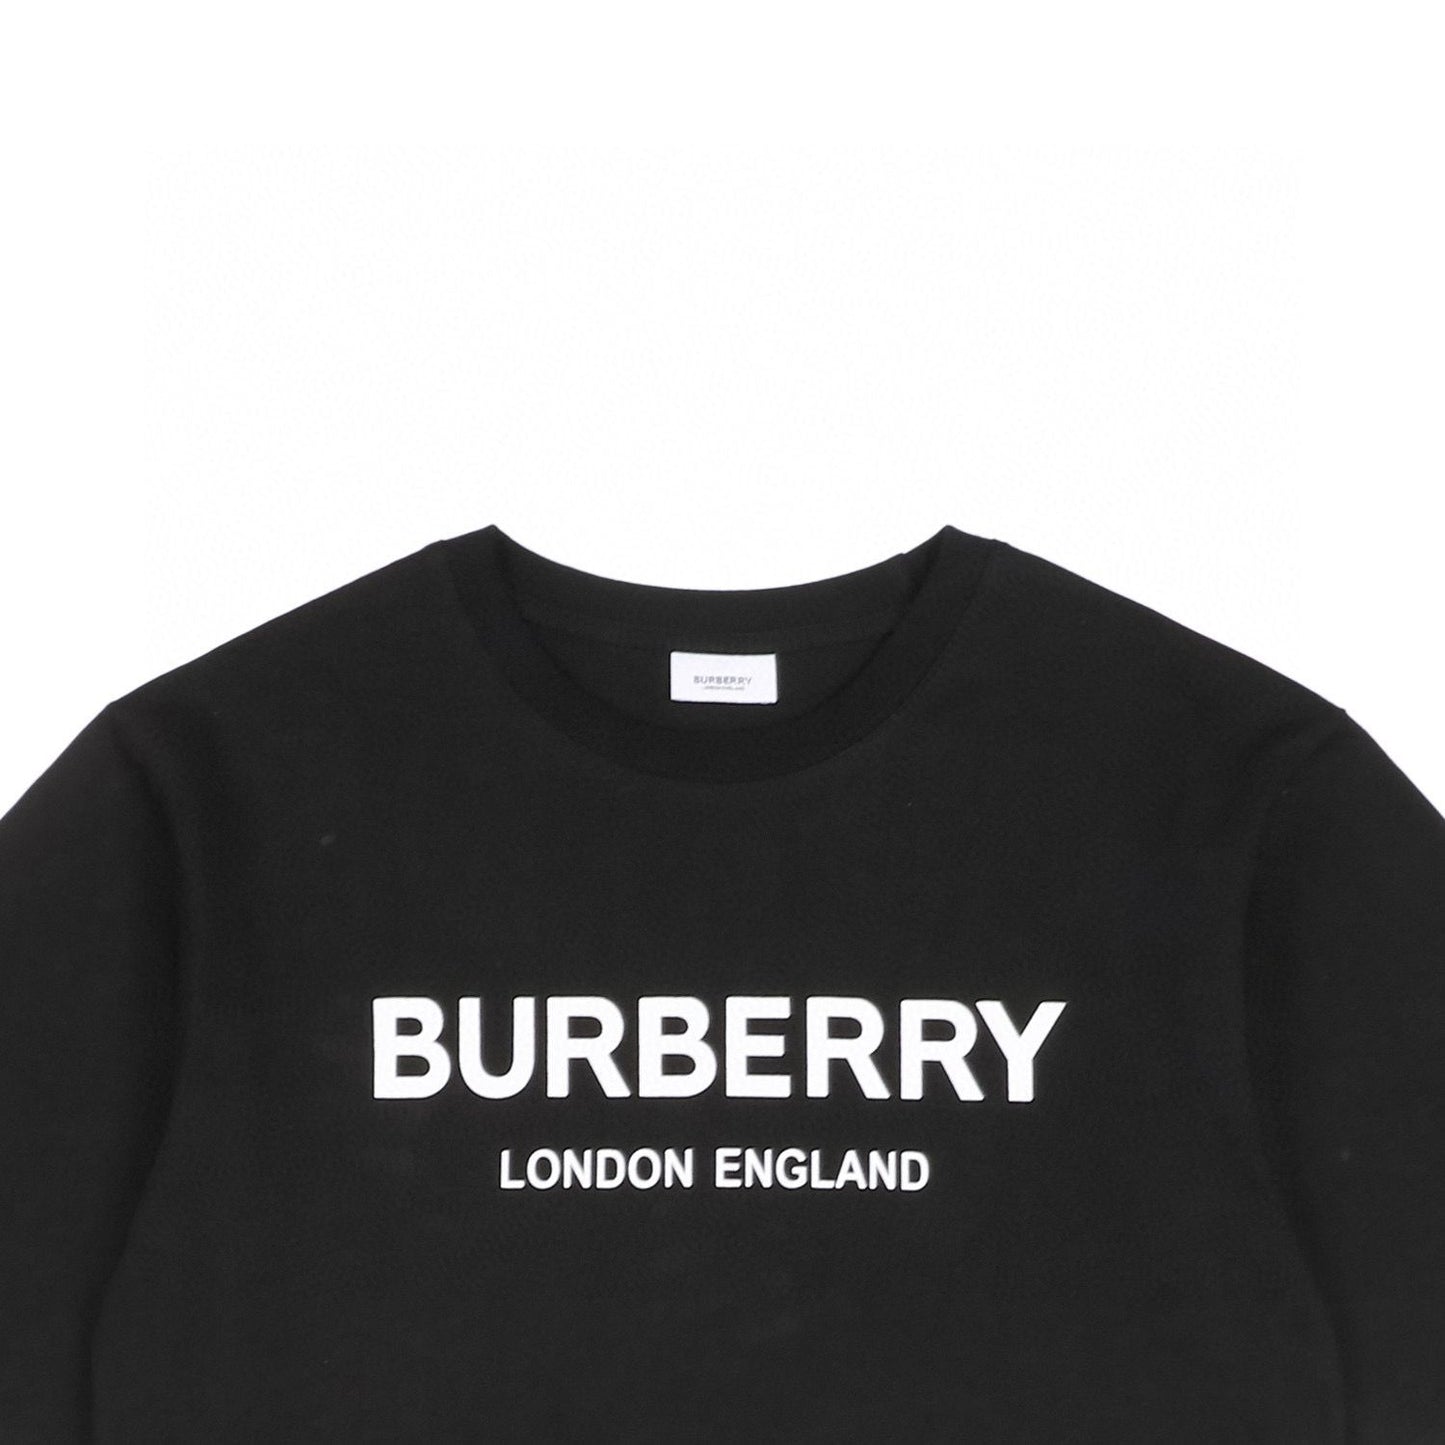 Burbrry Black T-Shirt